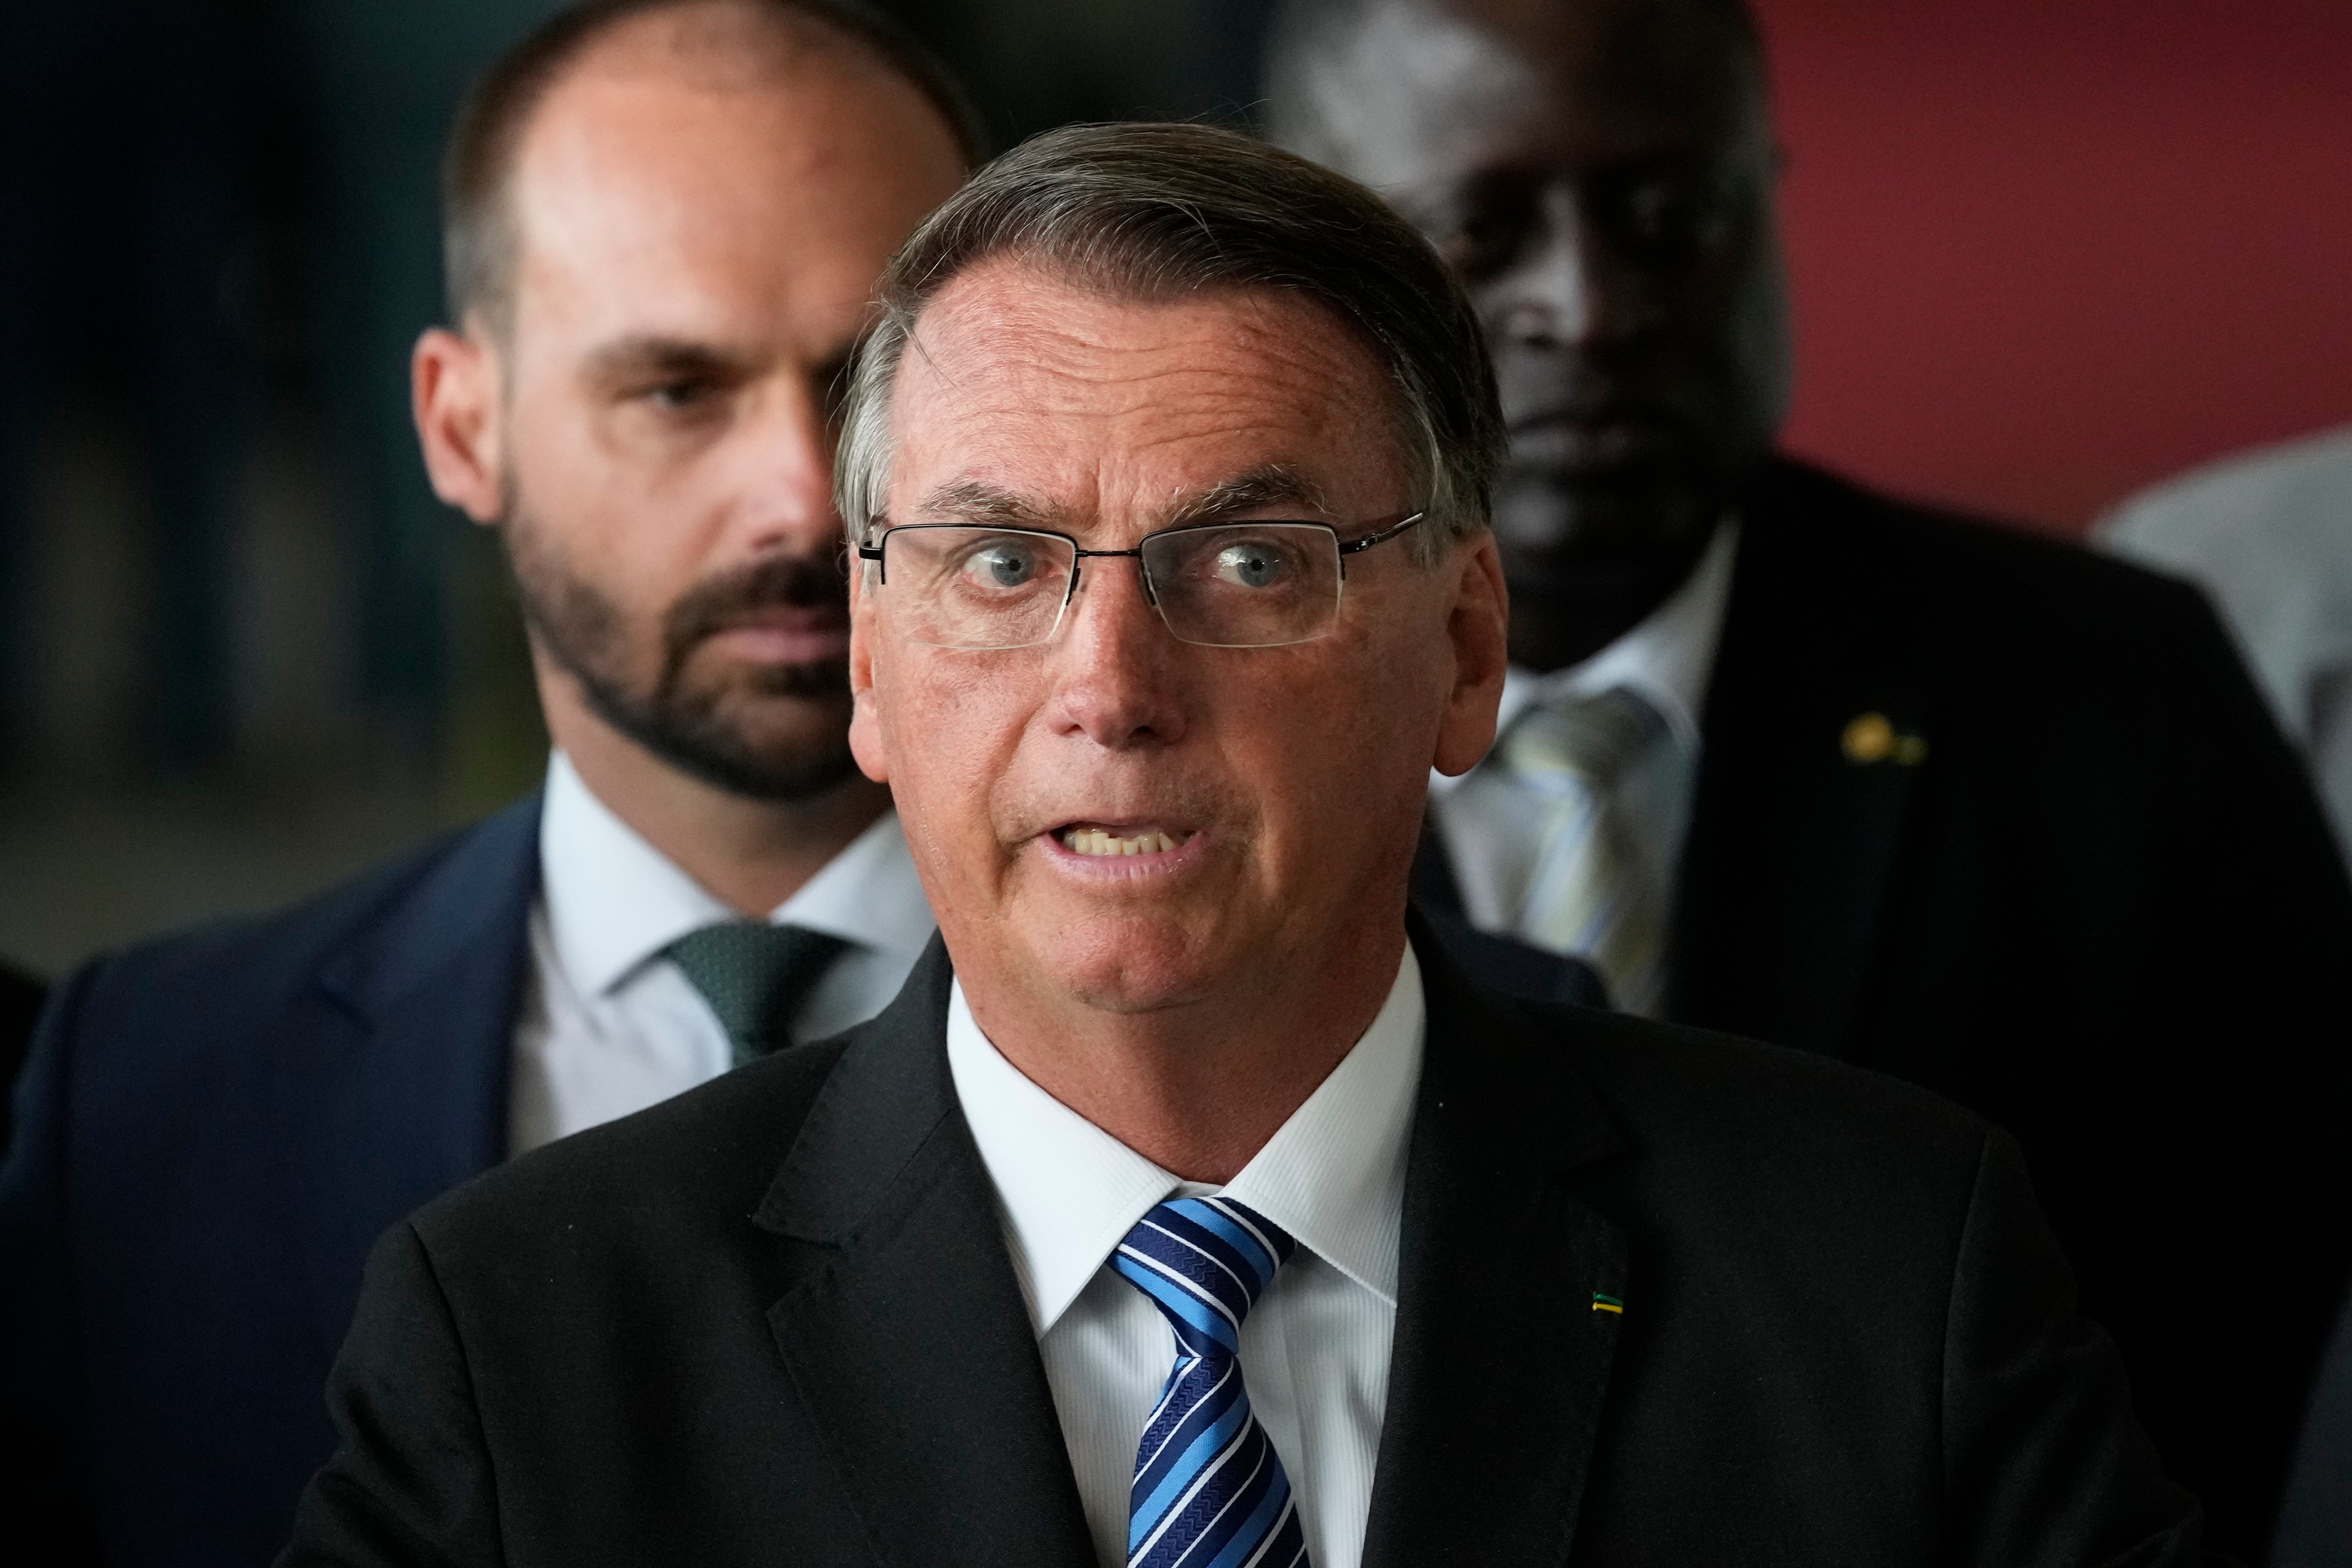 Bolsonaro da a entender que admite la derrota y desautoriza a los camioneros